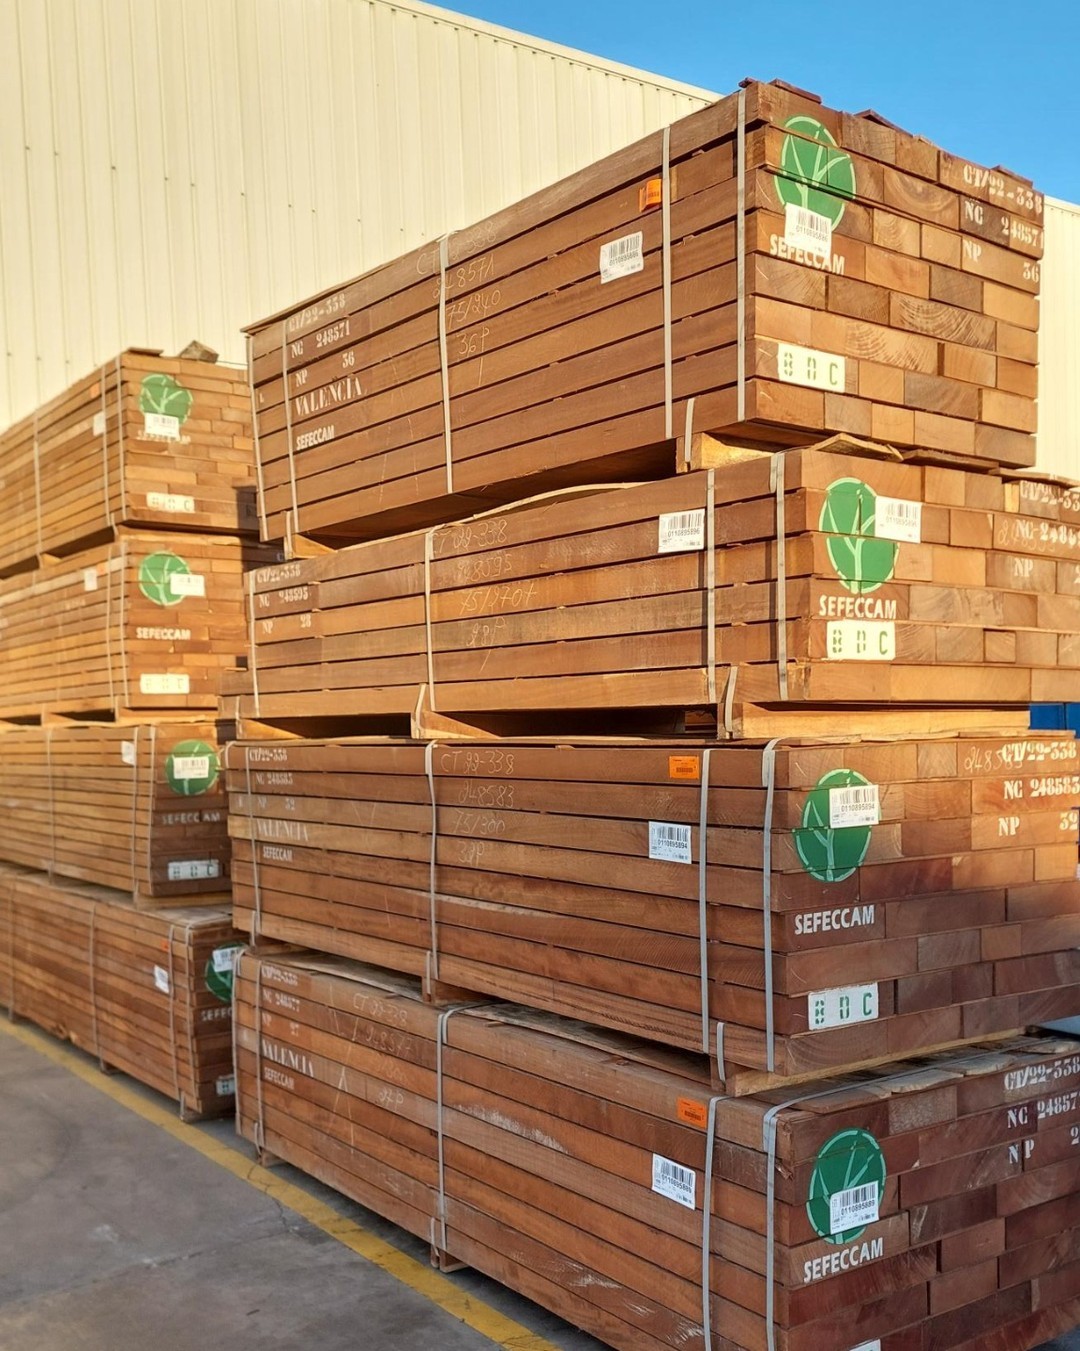 Ha llegado a nuestra central de Polinyà una nueva partida de Iroko. La madera de iroko es apreciada por su estabilidad y capacidad para resistir la intemperie. Es una elección popular en la construcción de embarcaciones, suelos, muebles y elementos arquitectónicos.🏗️
·
·
·
#gabarroinspira #proyectosamedida #amedida #madera #tableros #madera #arquitecturaydiseño #proyectosdemadera #exteriorismo #proyectosamedida #construccion #woodconstruction #listonesdemadera #woodesigns #machihembrado #fustaconstructiva #gabarroinspira #gabarrohermanos #lunawood #fustesdesde1907 #productividad #productivity #professional #calidad #fiable